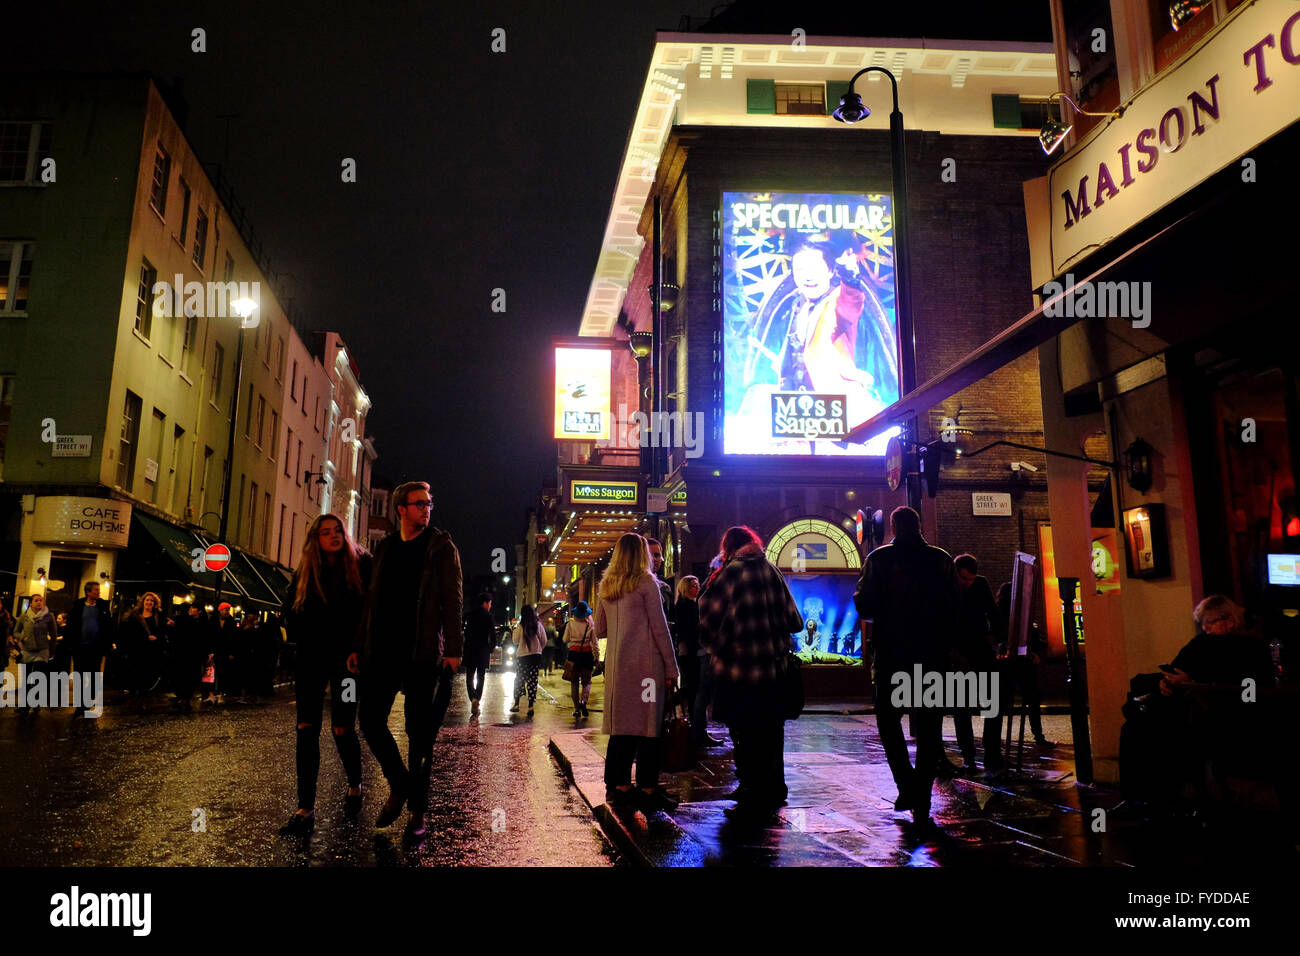 Prince Edward Theatre montrant Miss Saigon la nuit entouré de bars et cafés avec des personnes bénéficiant d'une nuit dehors à Soho, Londres Banque D'Images